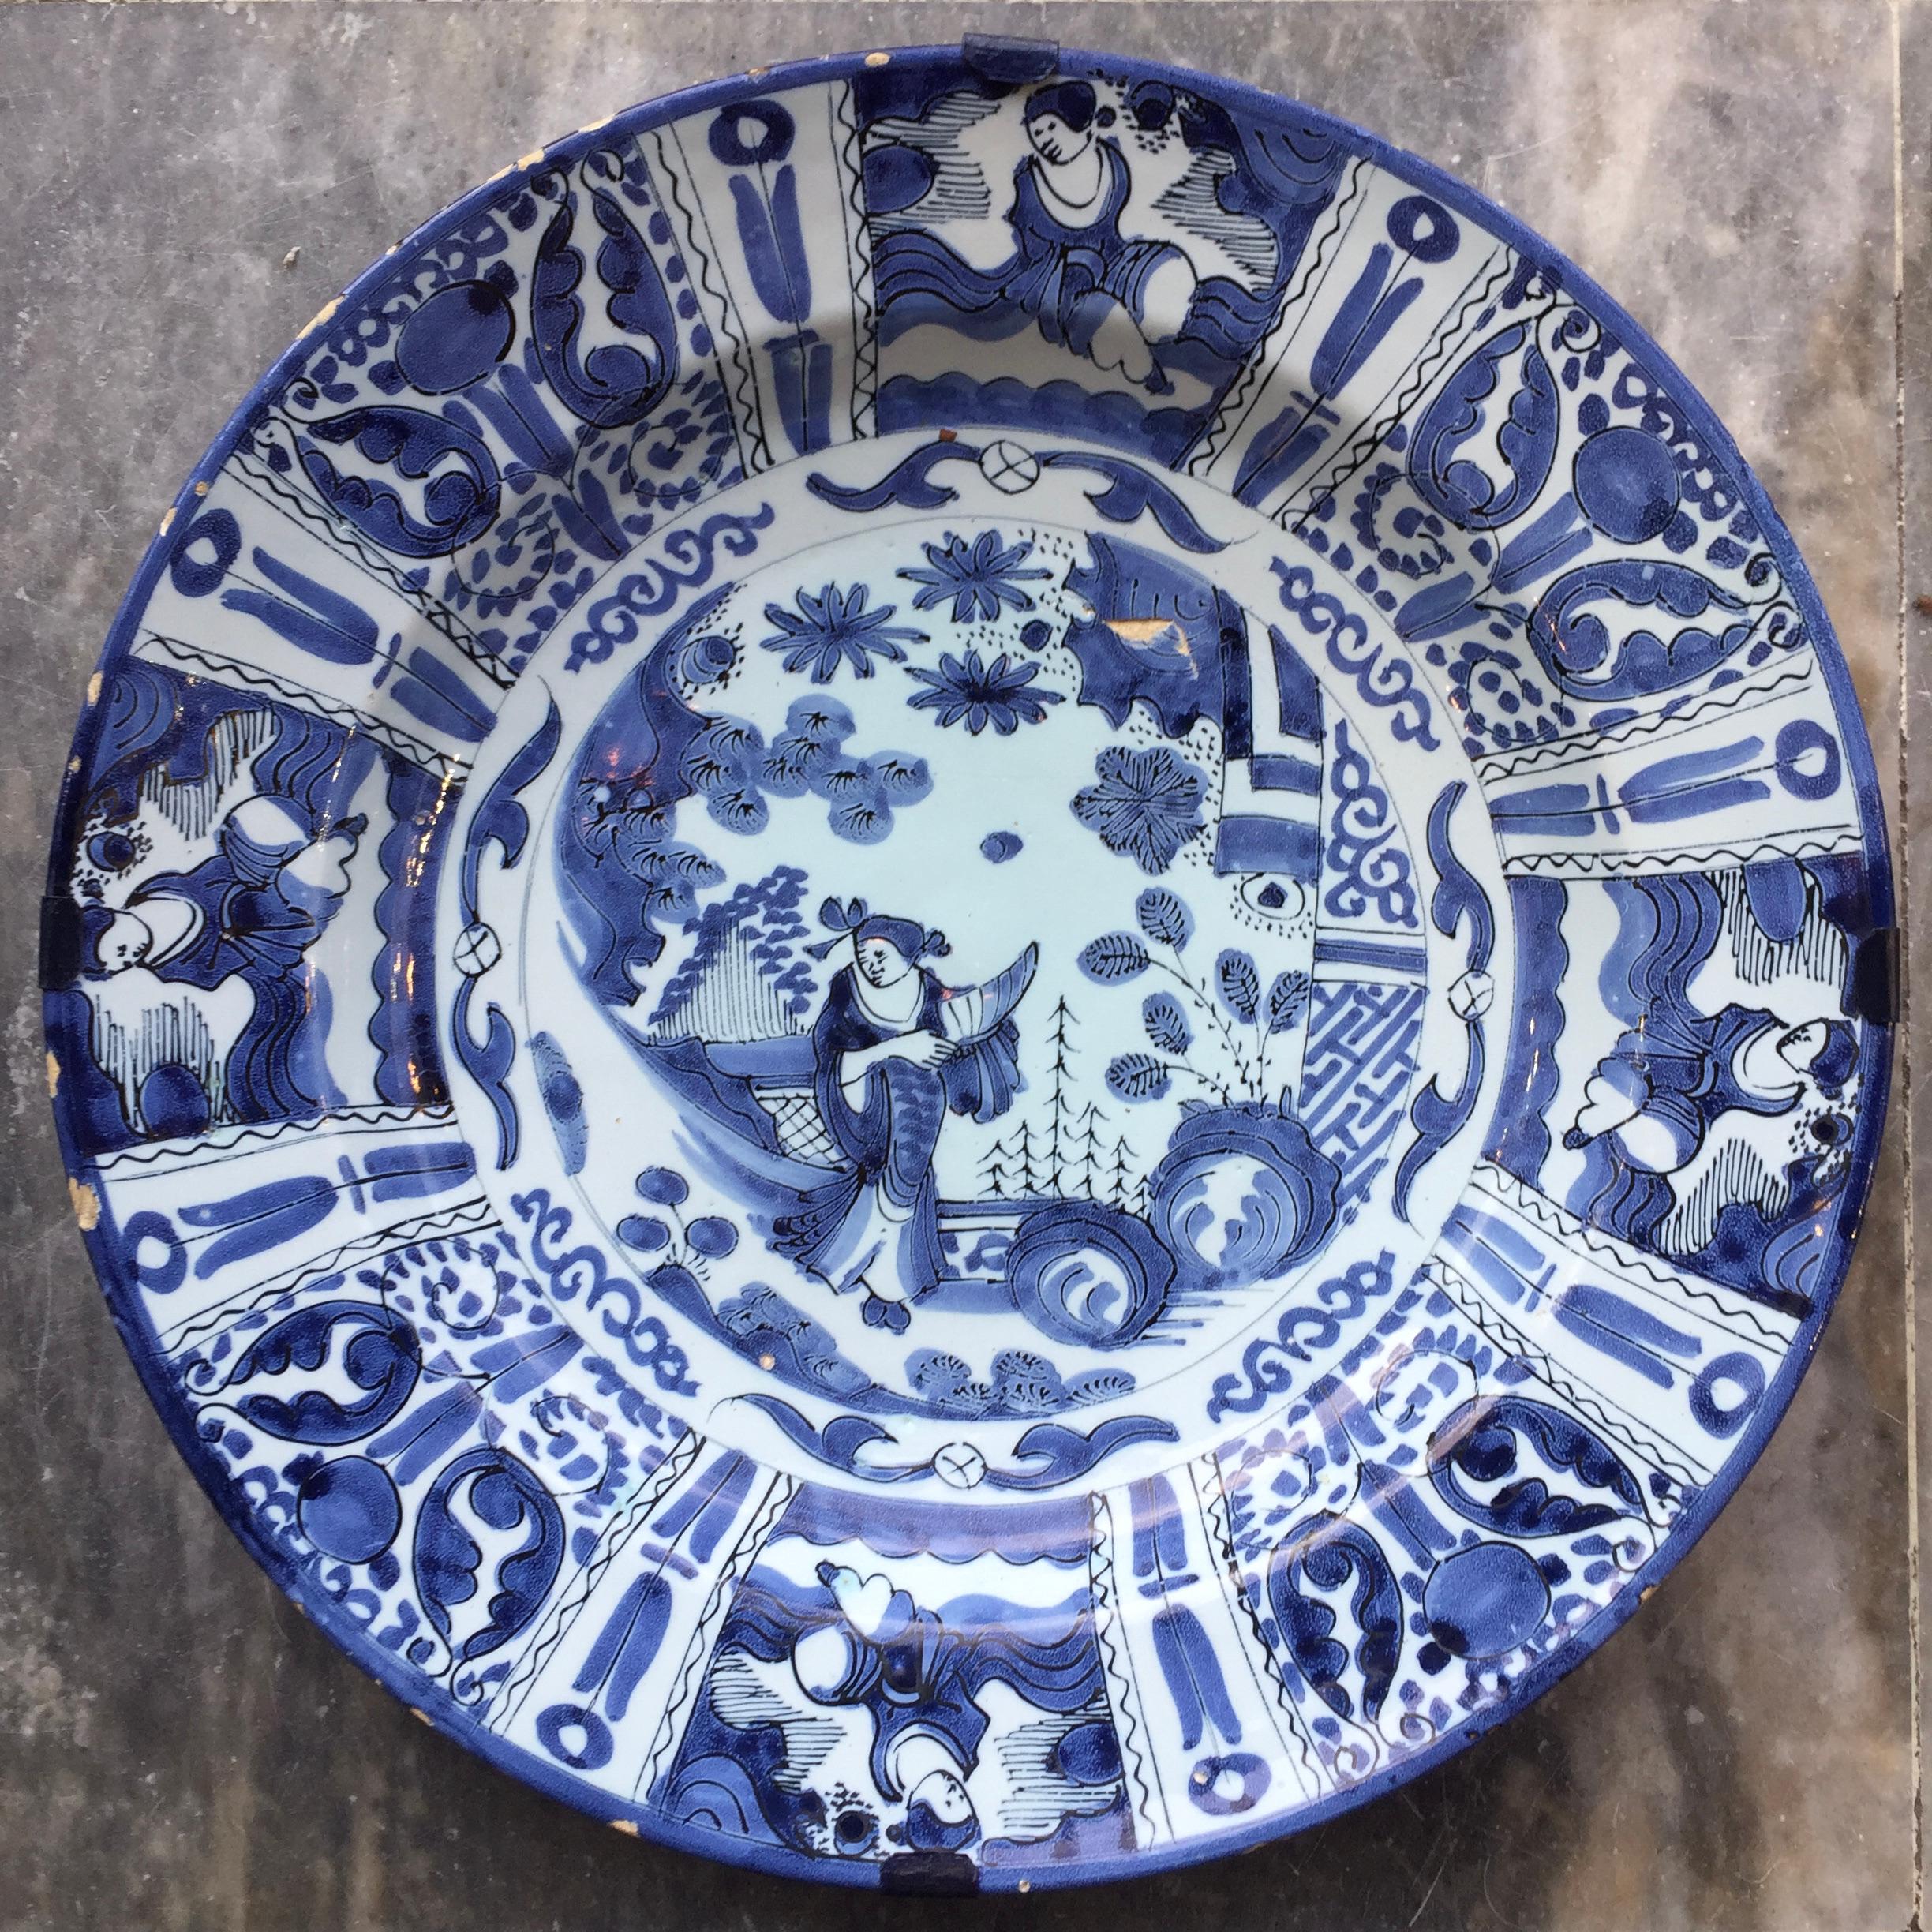 Ville : Delft
Atelier : Inconnu
Date : Dernier quart du XVIIe siècle

Une grande assiette bleue et blanche de style Wanli / Tianqi
Décorée d'une figure chinoise au centre, entourée de huit cartouches avec des fleurs et des figures.
Copie exacte des